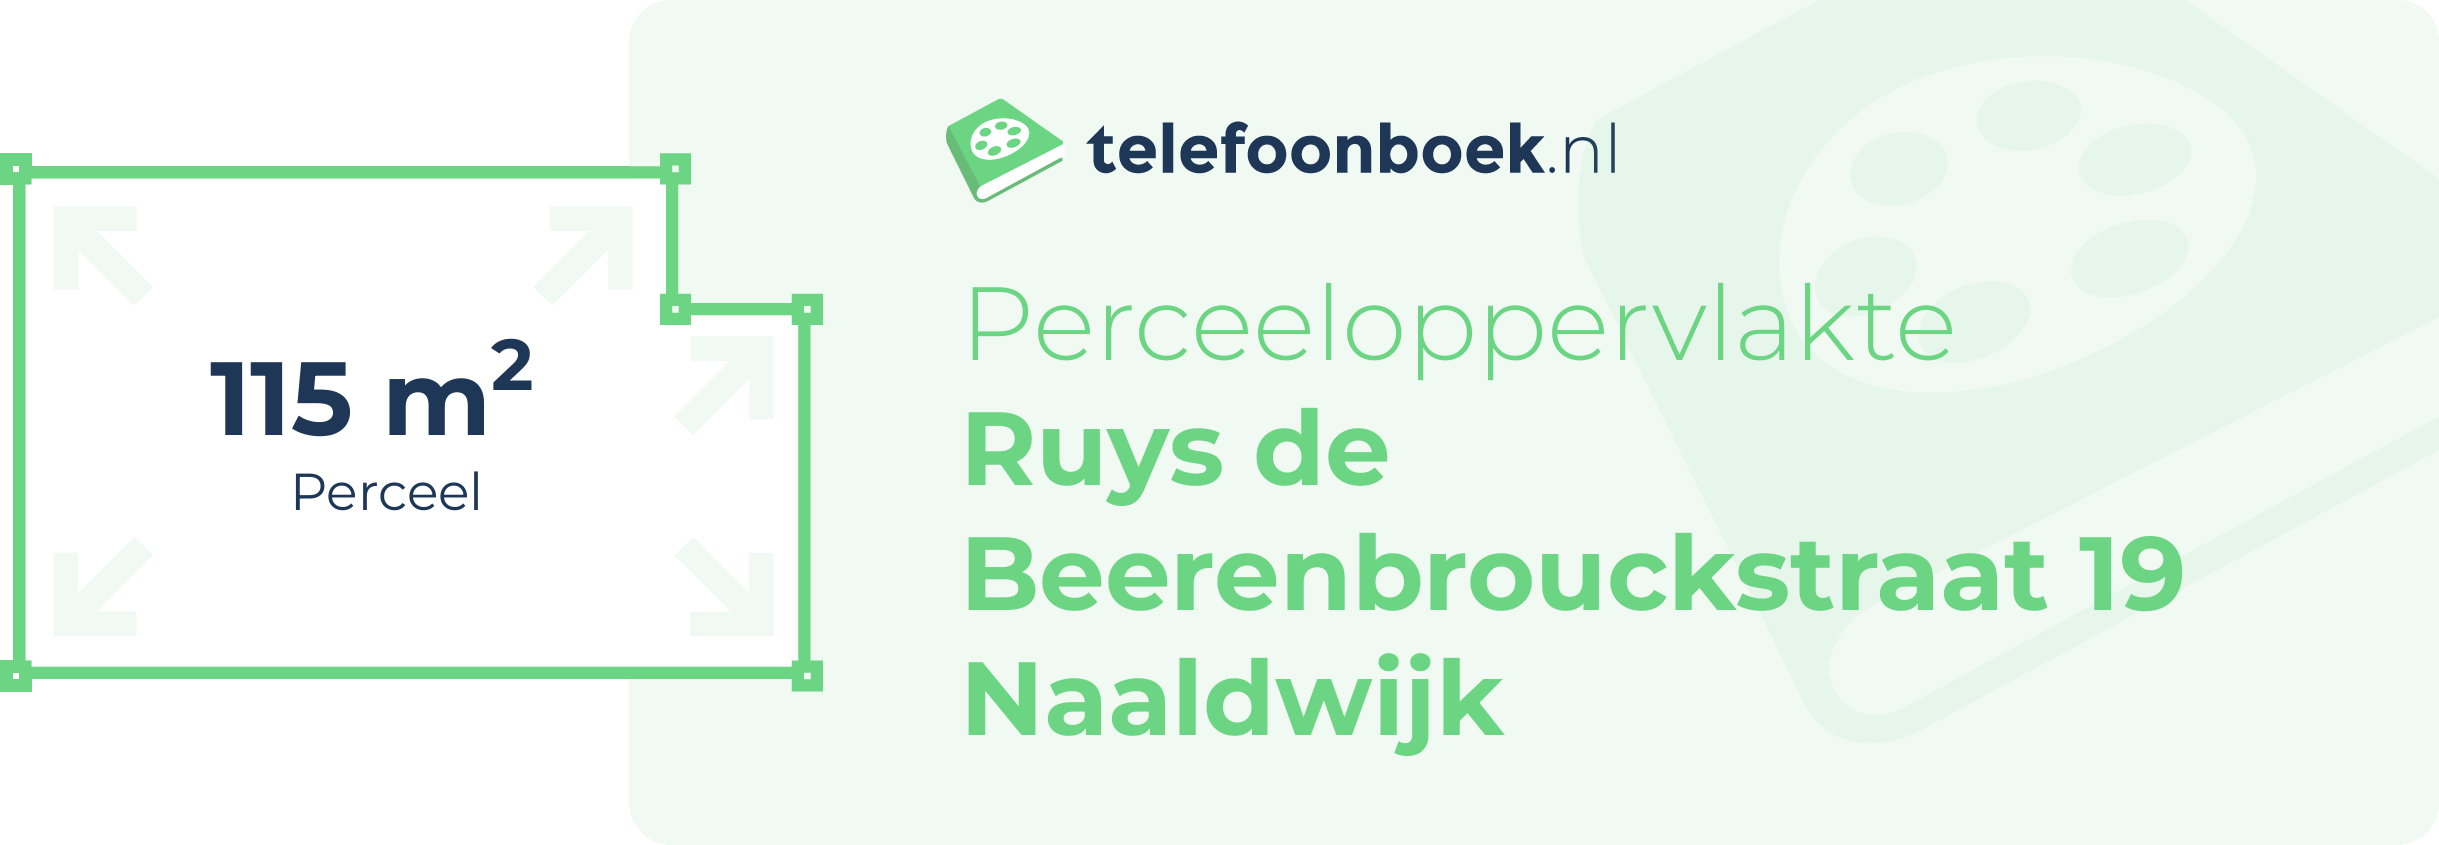 Perceeloppervlakte Ruys De Beerenbrouckstraat 19 Naaldwijk